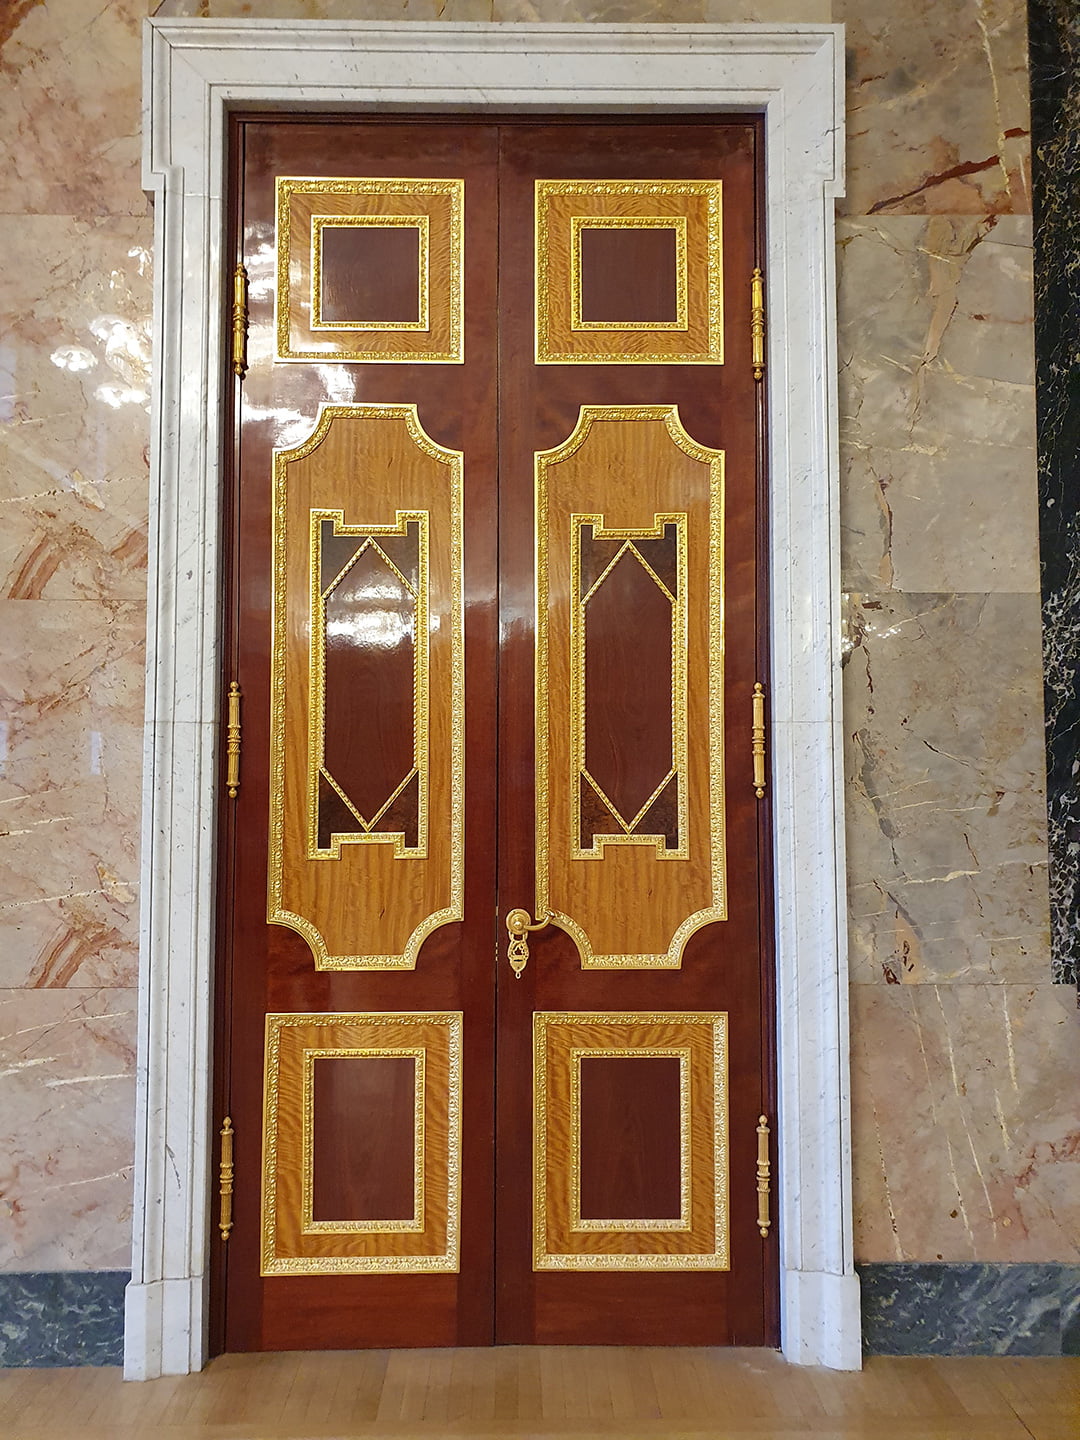 Георгиевский зал Михайловского дворца - оформление дверей